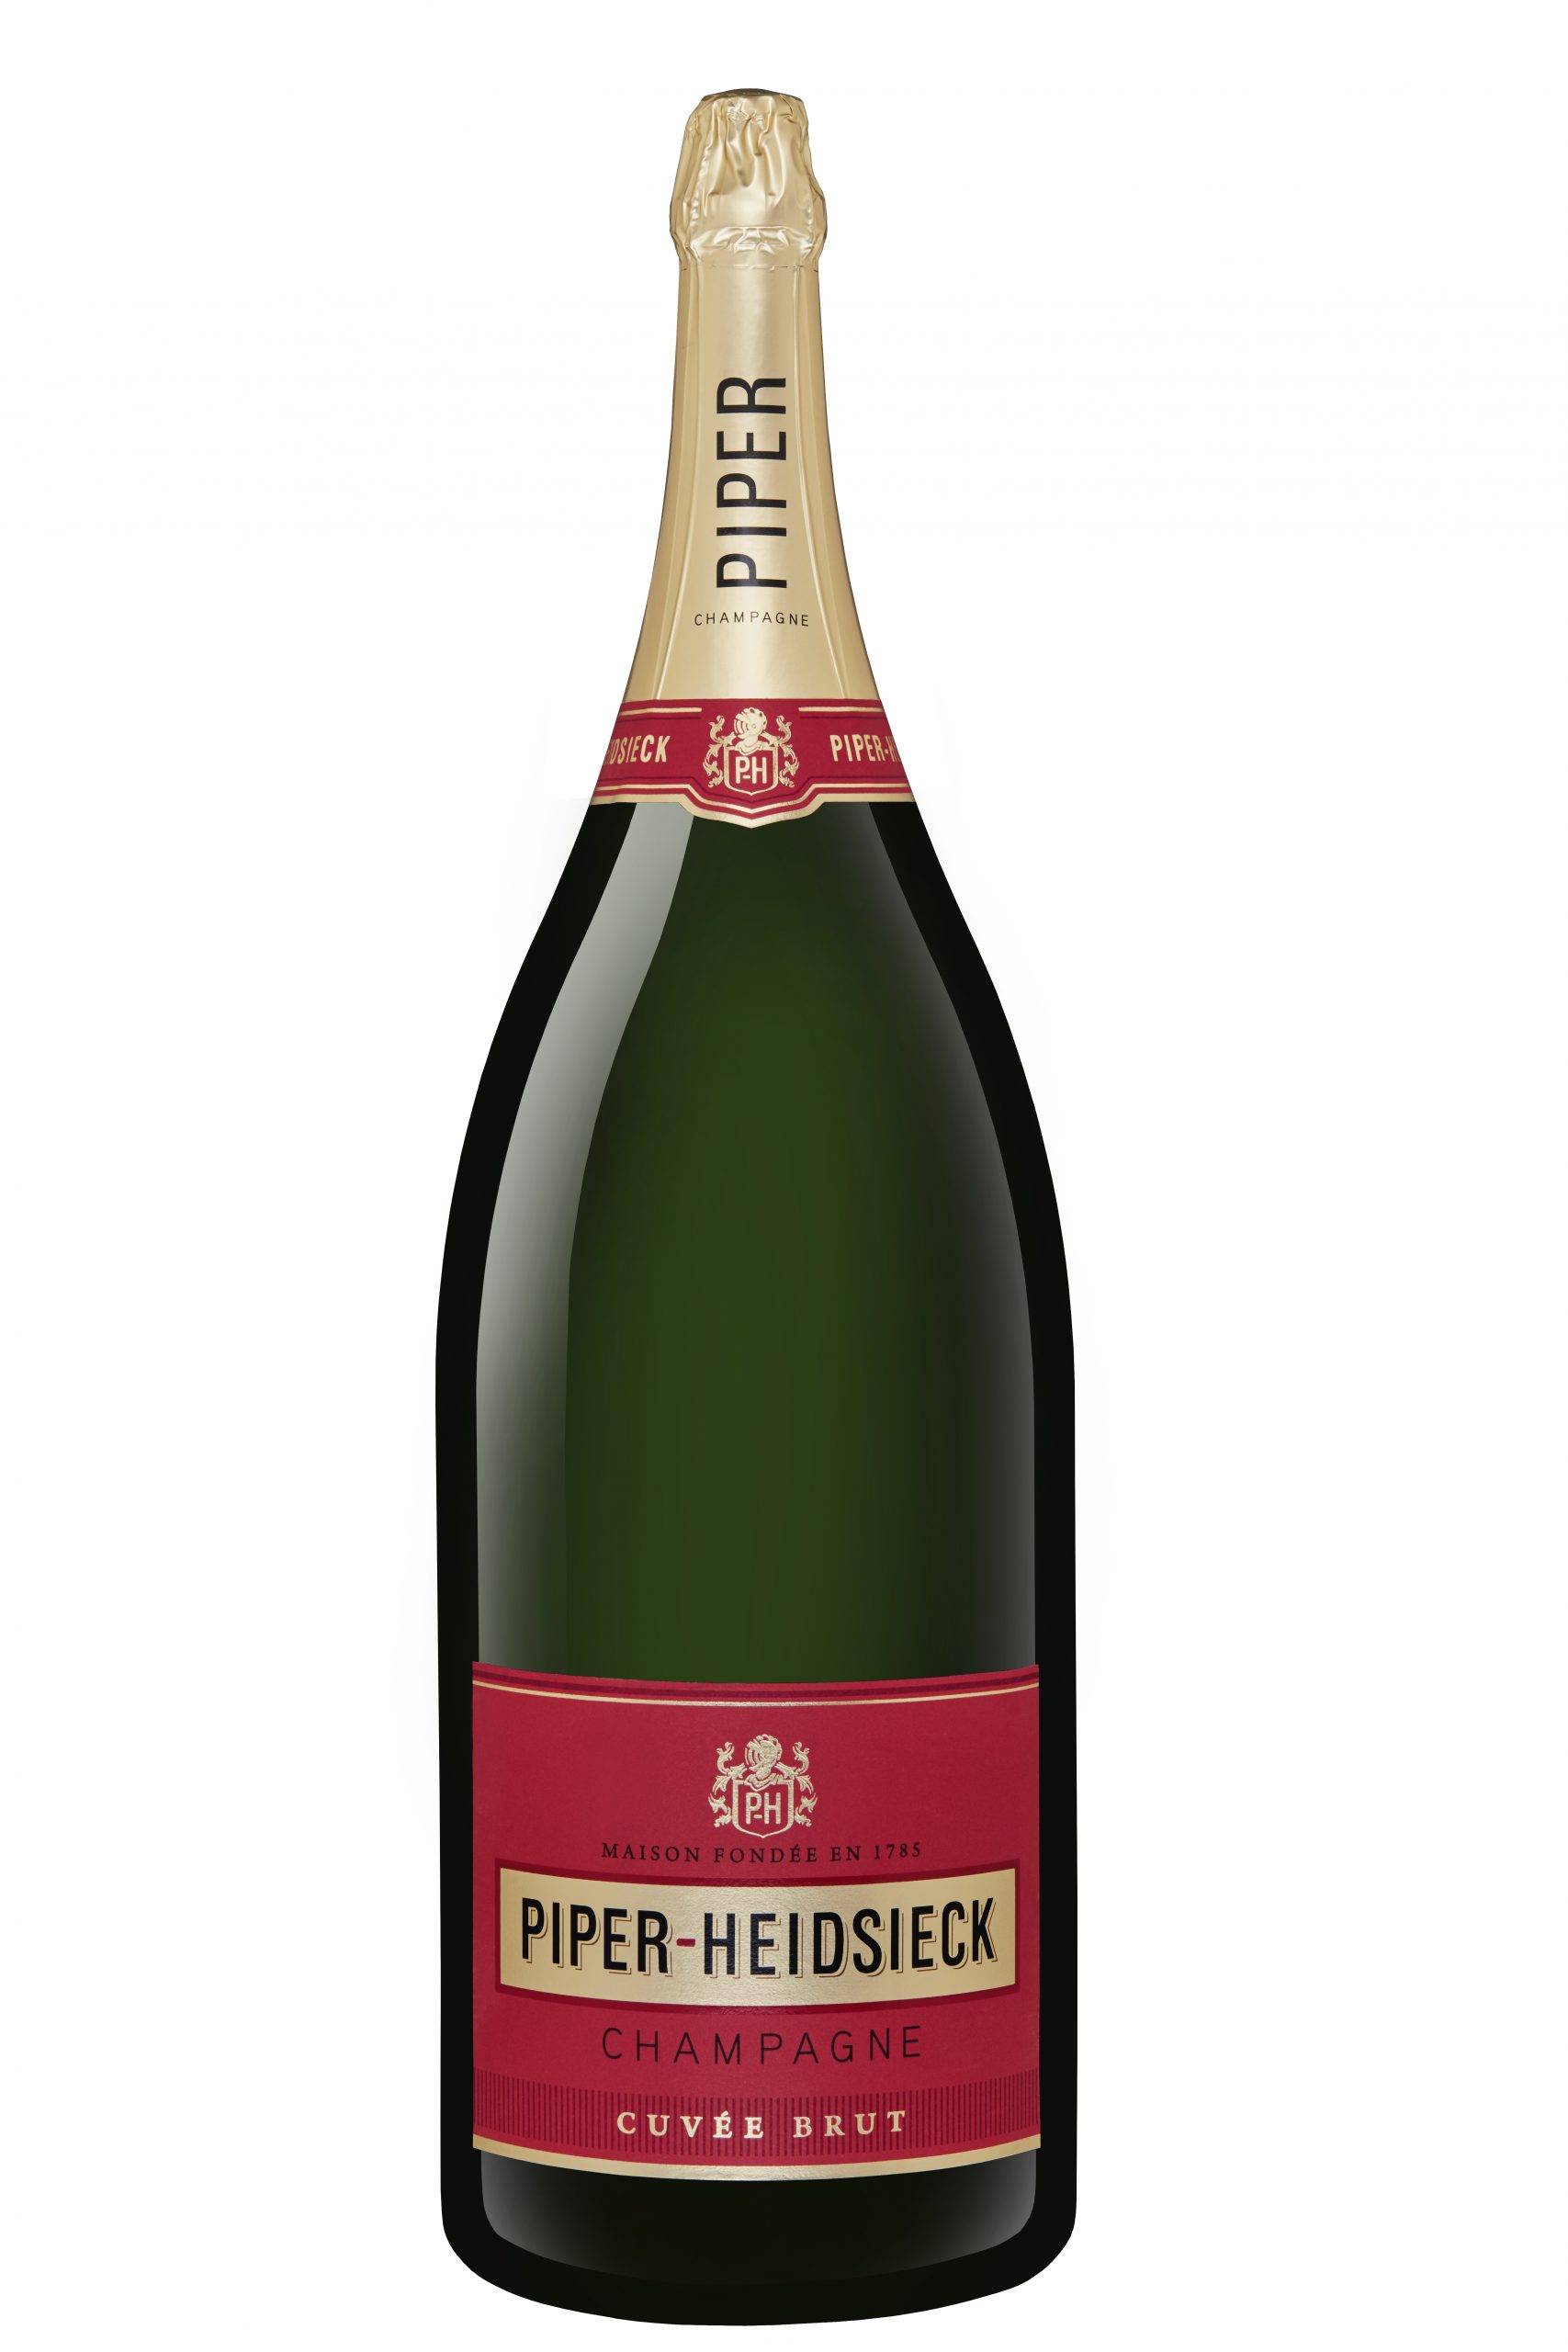 Piper-Heidsieck dummy bottle 9L